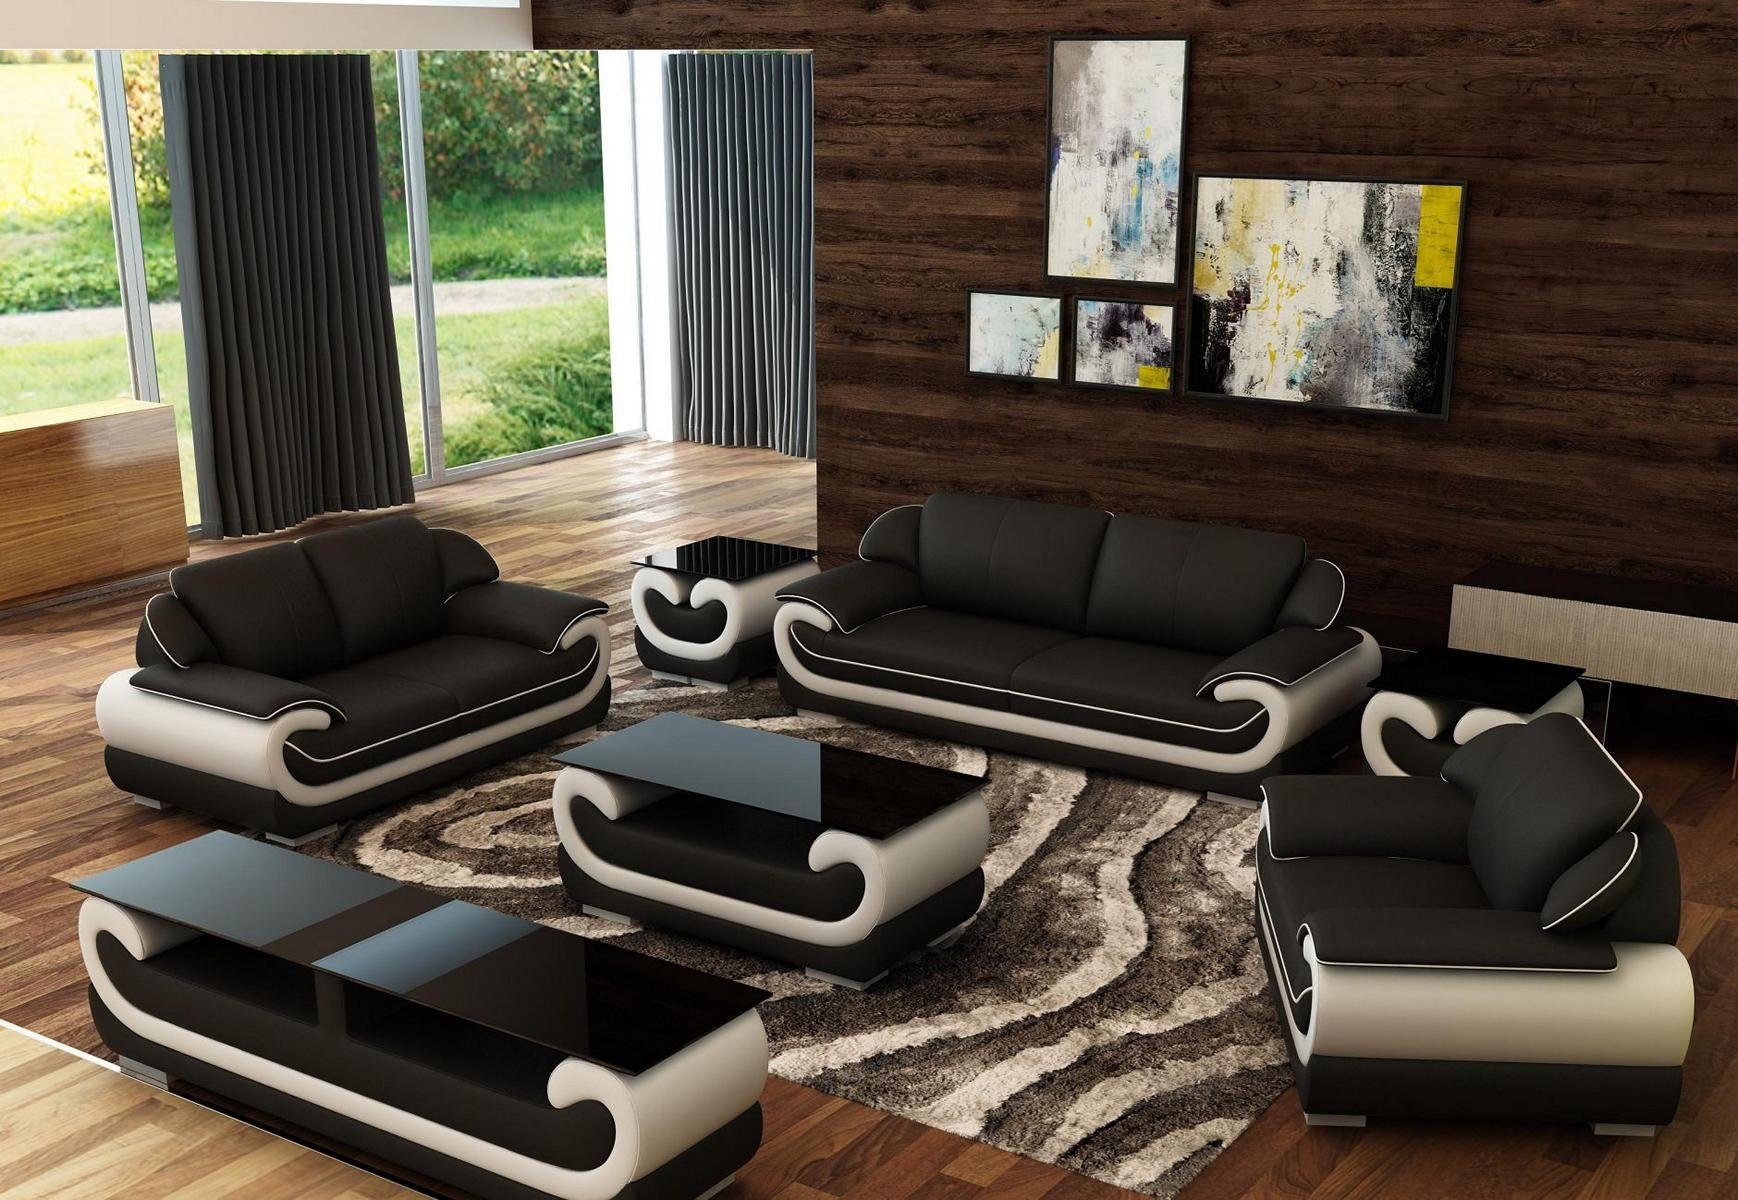 JVmoebel Sofa Sofas 3+2+1 Sitzer Design Schwarz/Beige Set in Europe Leder Made Couchen Relax, Sofas Polster